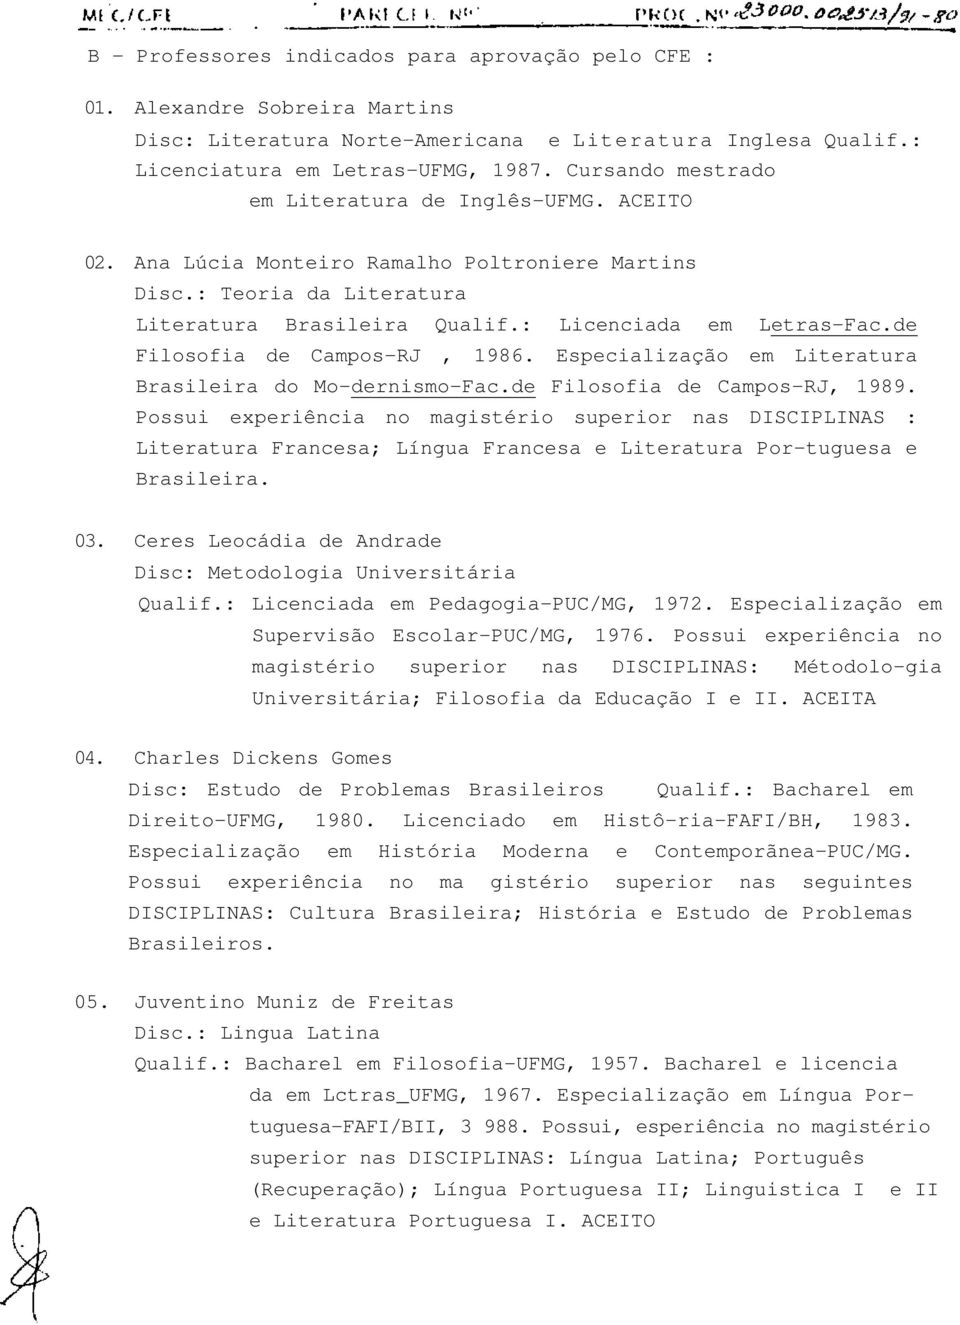 de Filosofia de Campos-RJ, 1986. Especialização em Literatura Brasileira do Mo-dernismo-Fac.de Filosofia de Campos-RJ, 1989.